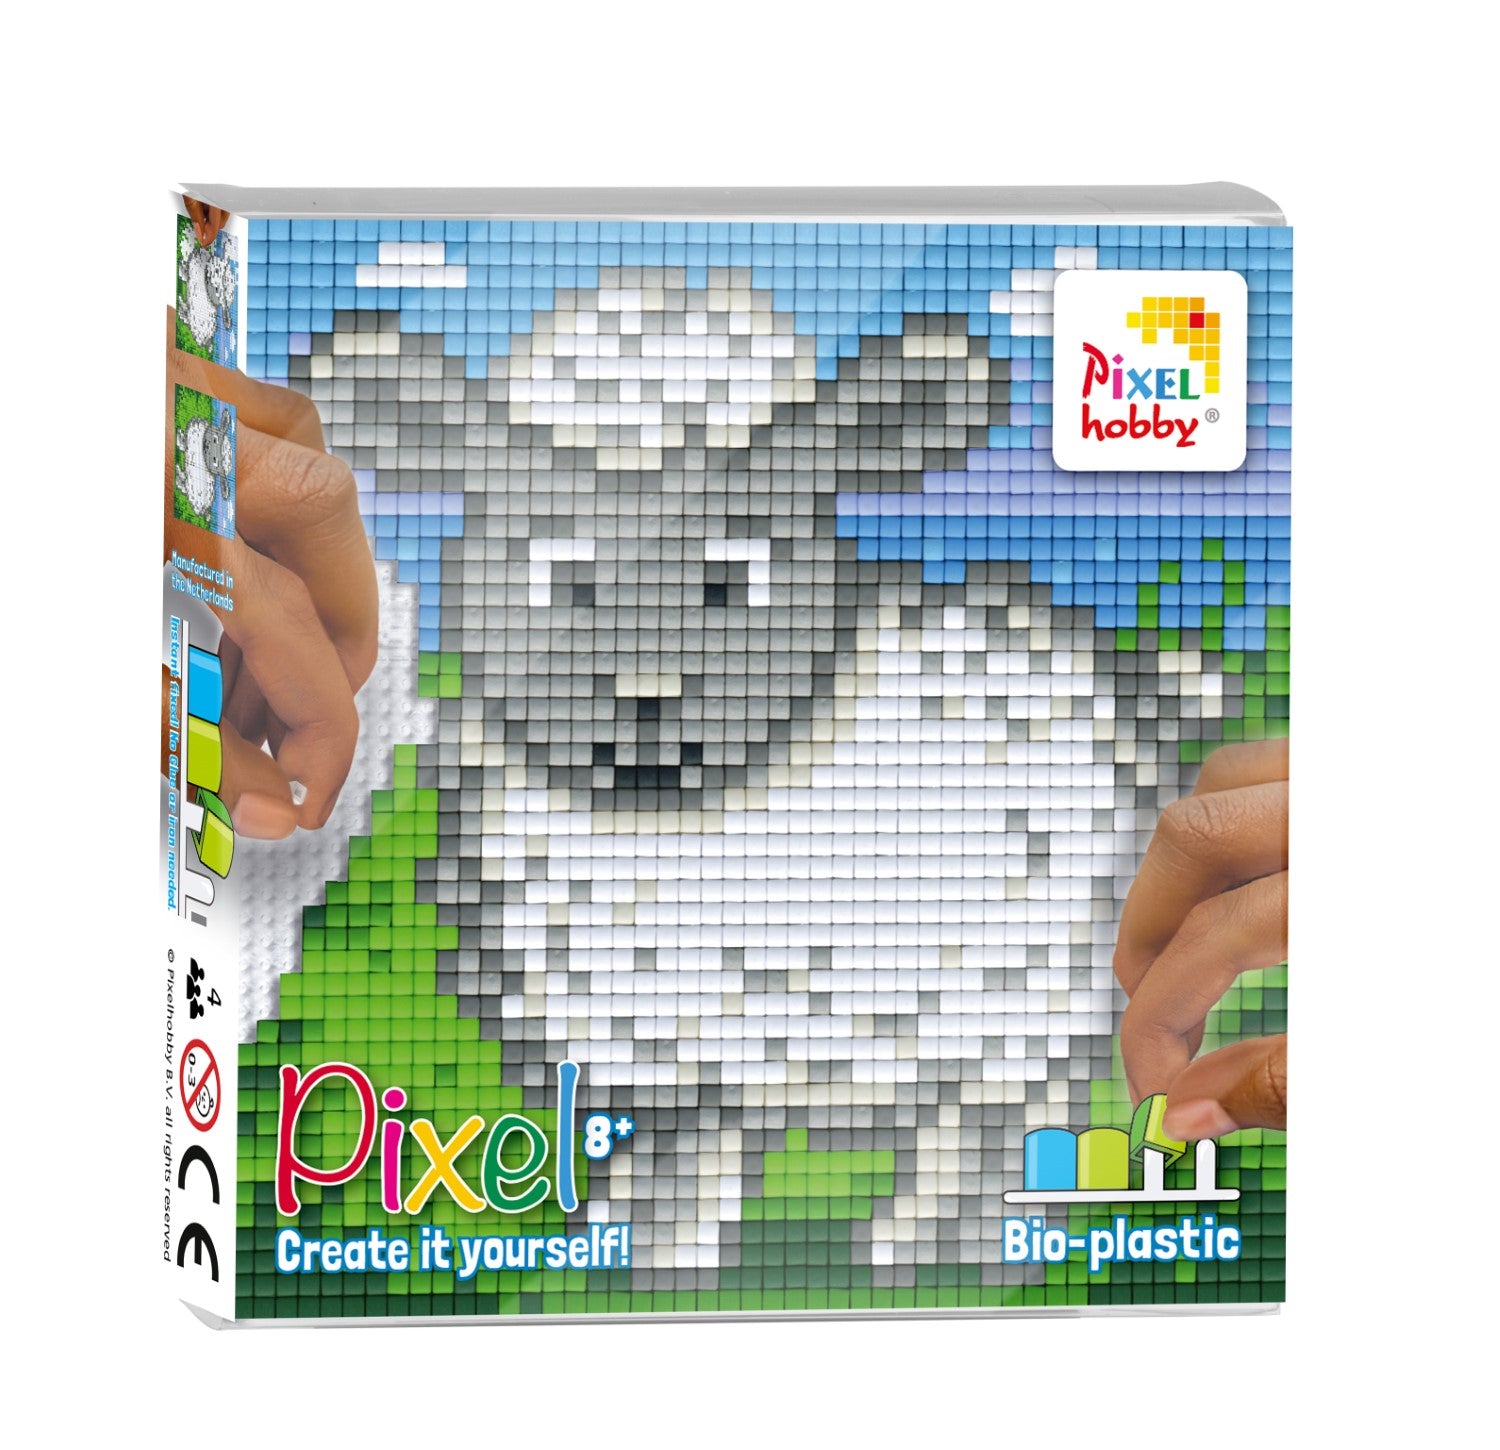 Pixelhobby Classic Pixel Set - Sheep